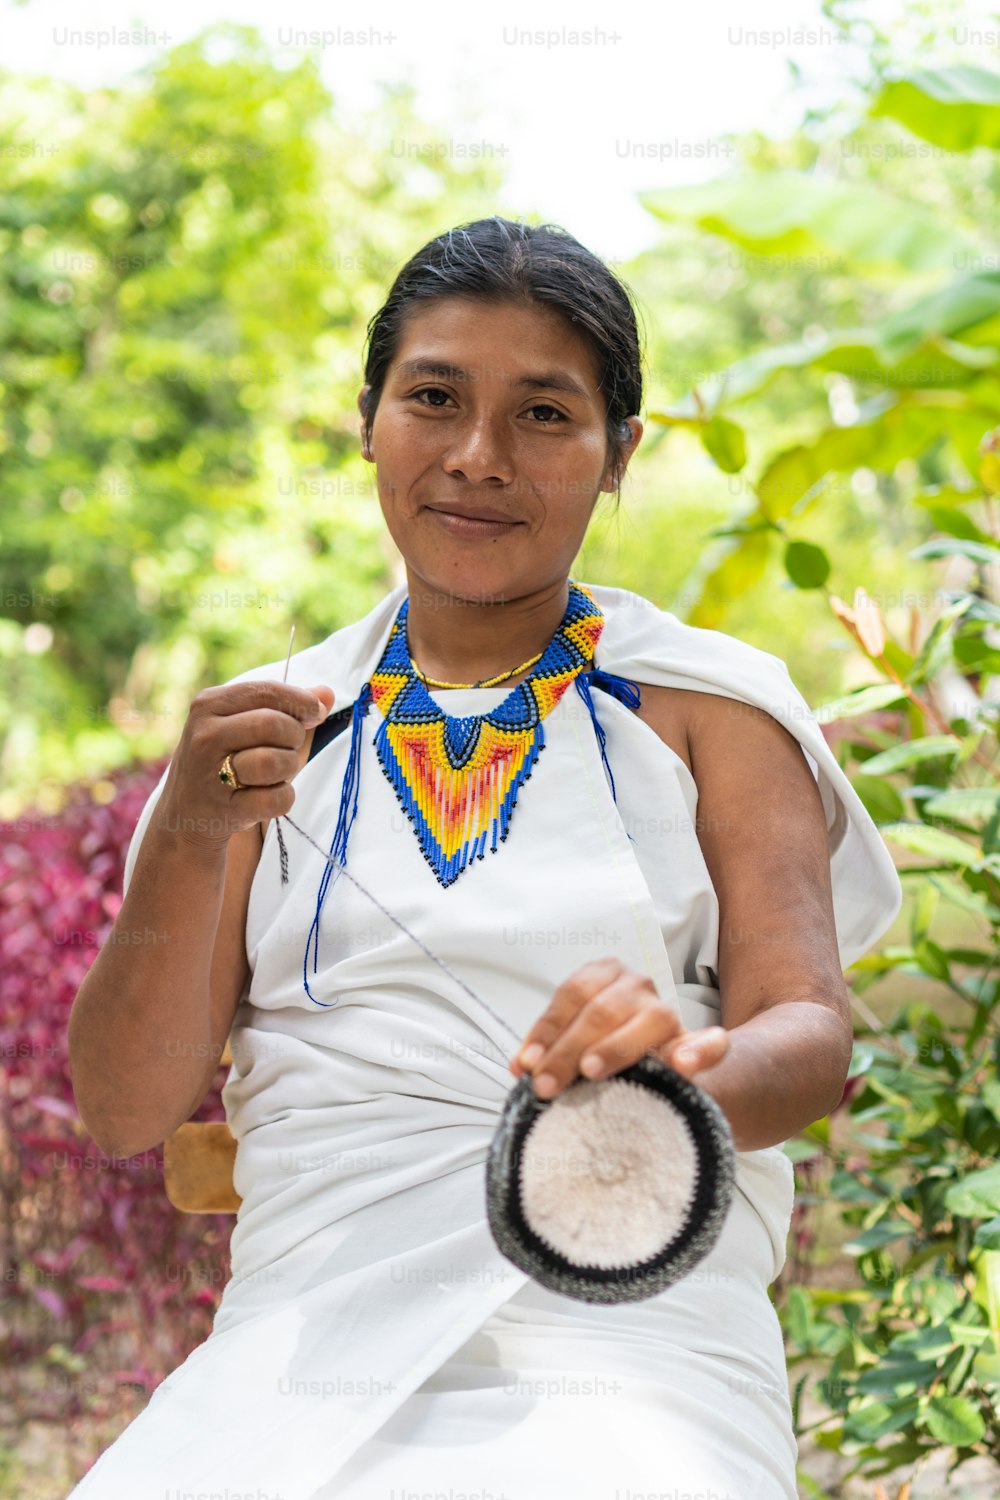 Mujer indígena de la Sierra Nevada de Santa Marta con ropa tradicional tejiendo mirando a la cámara.